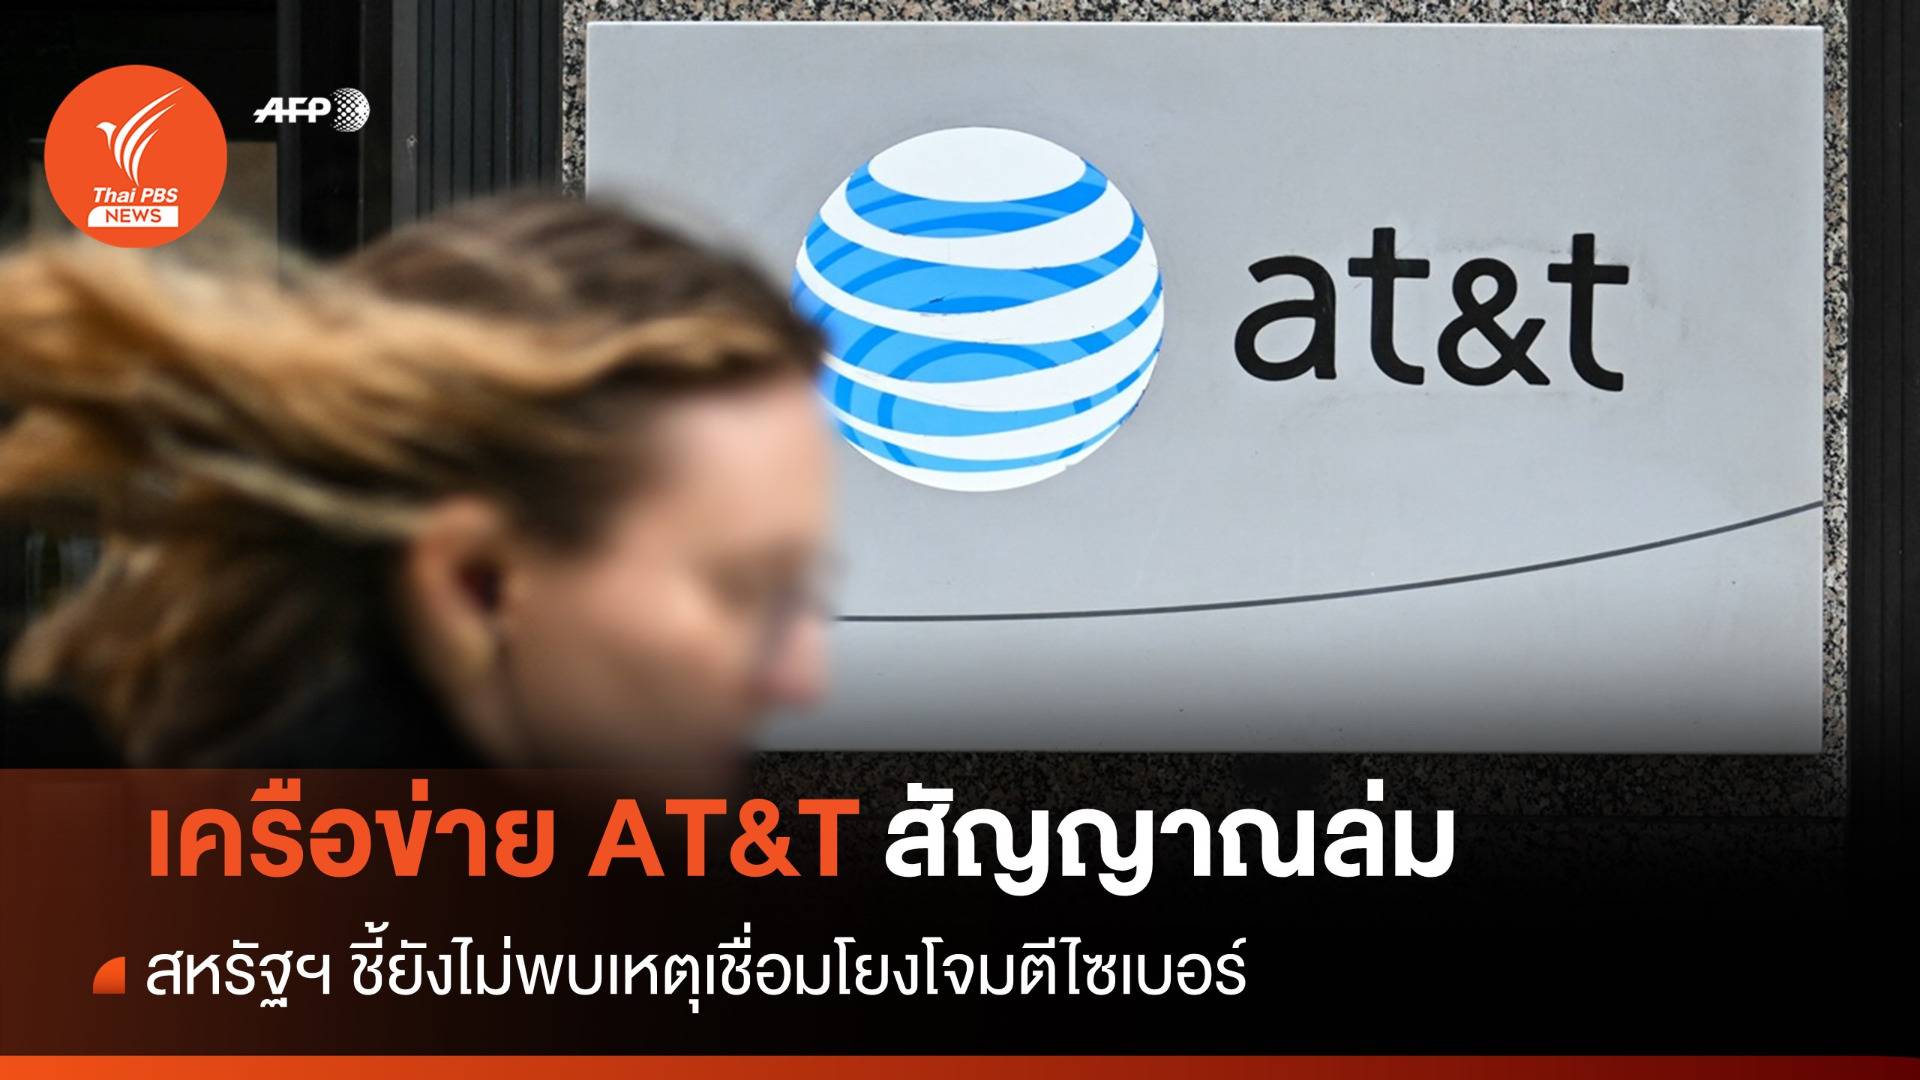 AT&T สัญญาณล่มนาน 11 ชม. สหรัฐฯ ชี้ยังไม่พบเหตุโยงโจมตีไซเบอร์